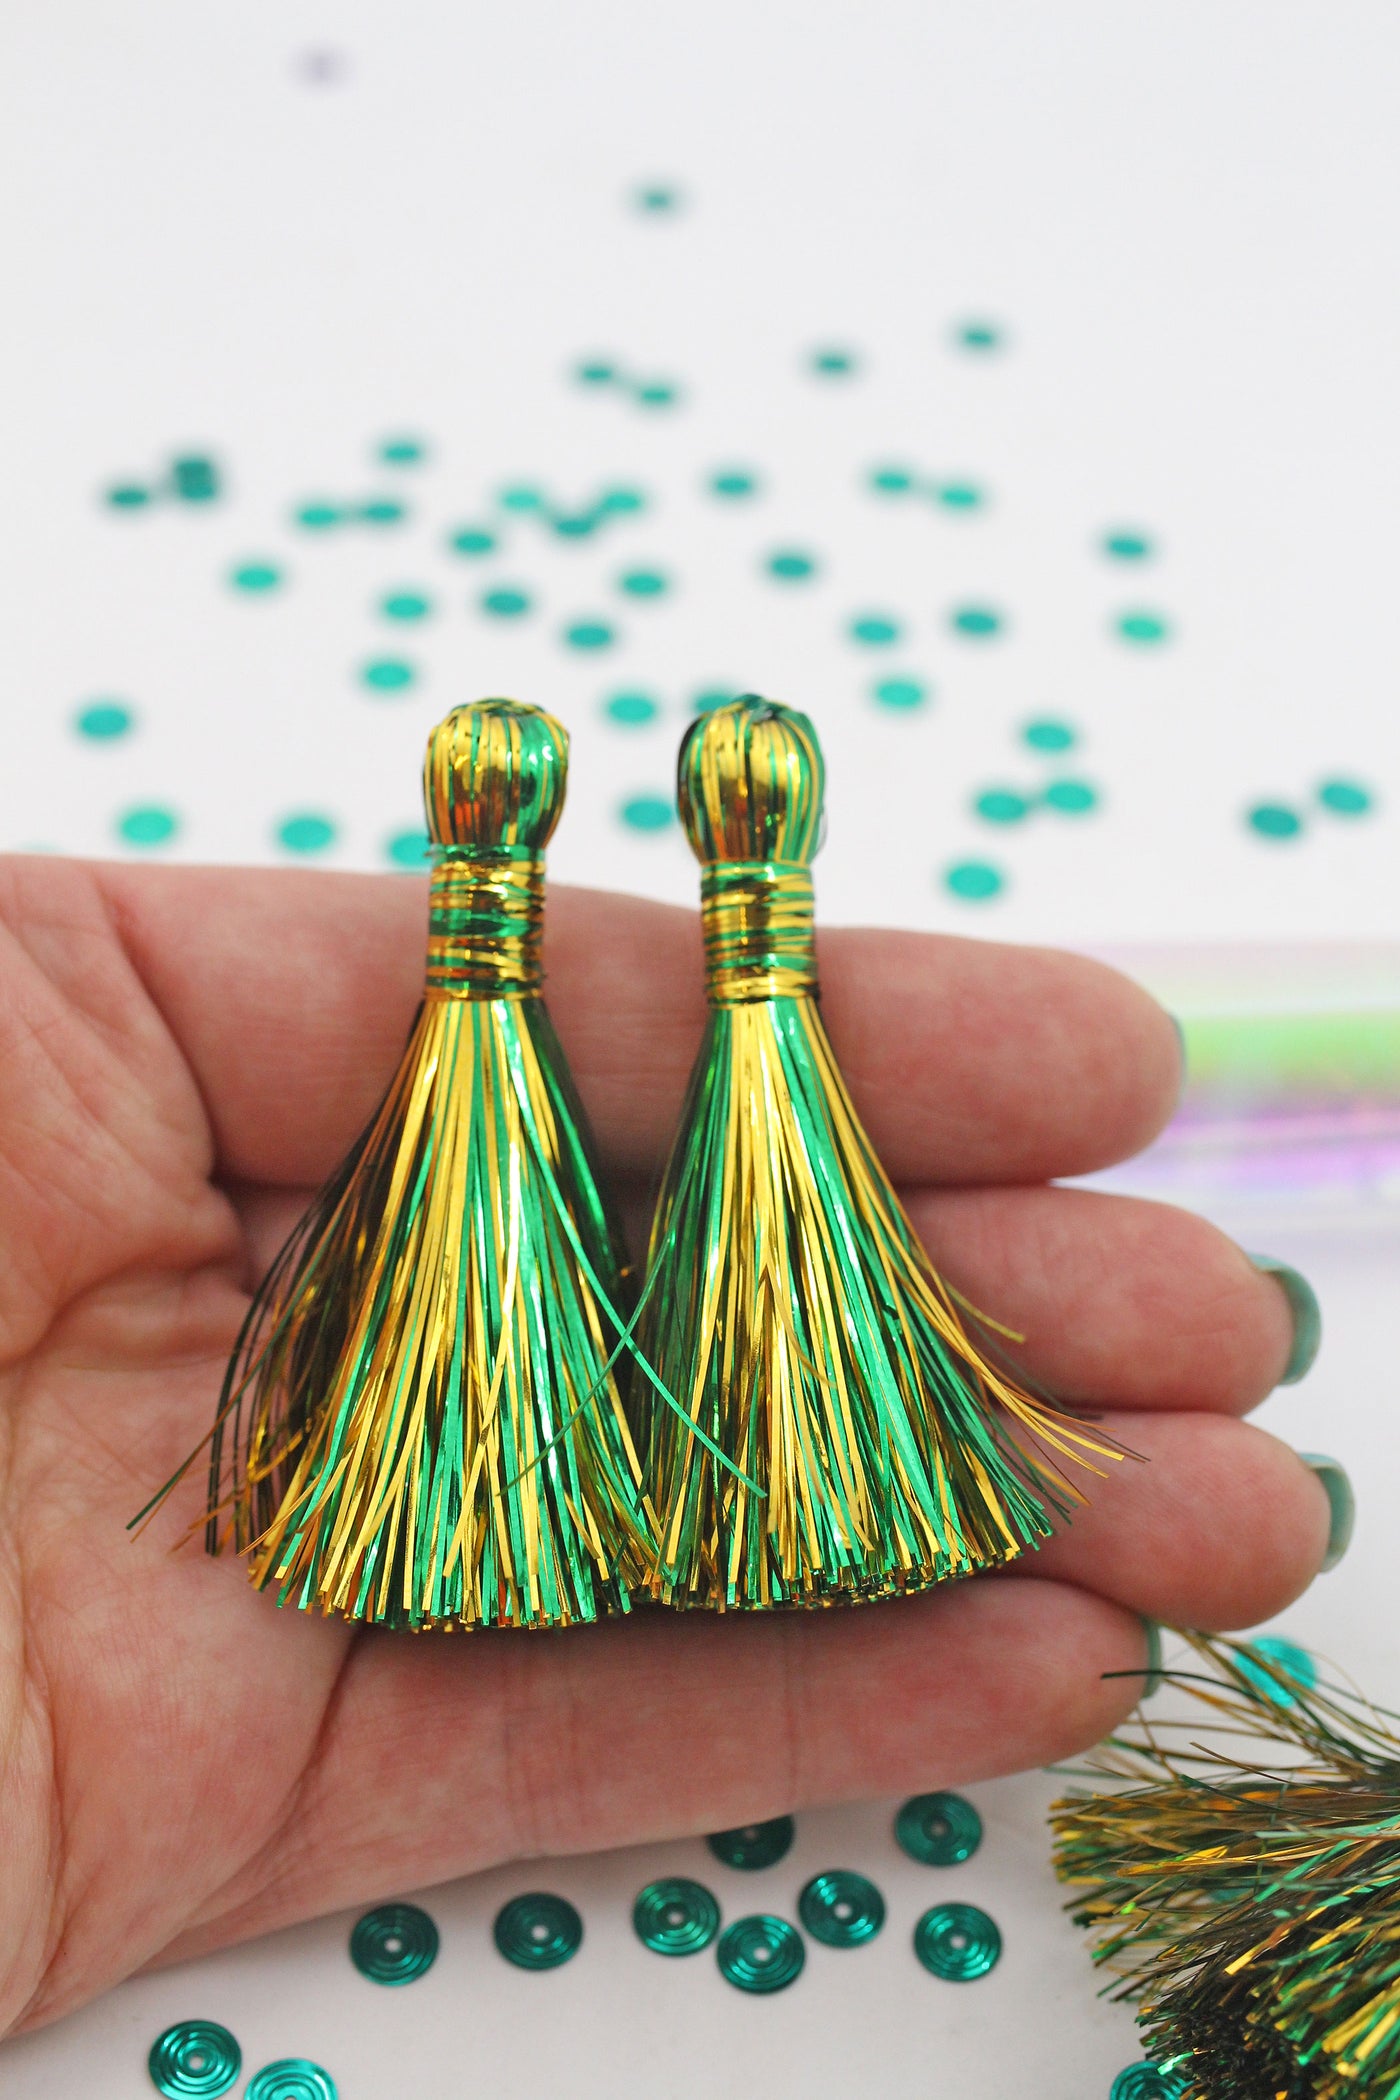 Saint Patrick's Day Tinsel Tassels, 2.5" Metallic Jewelry Making Tassels